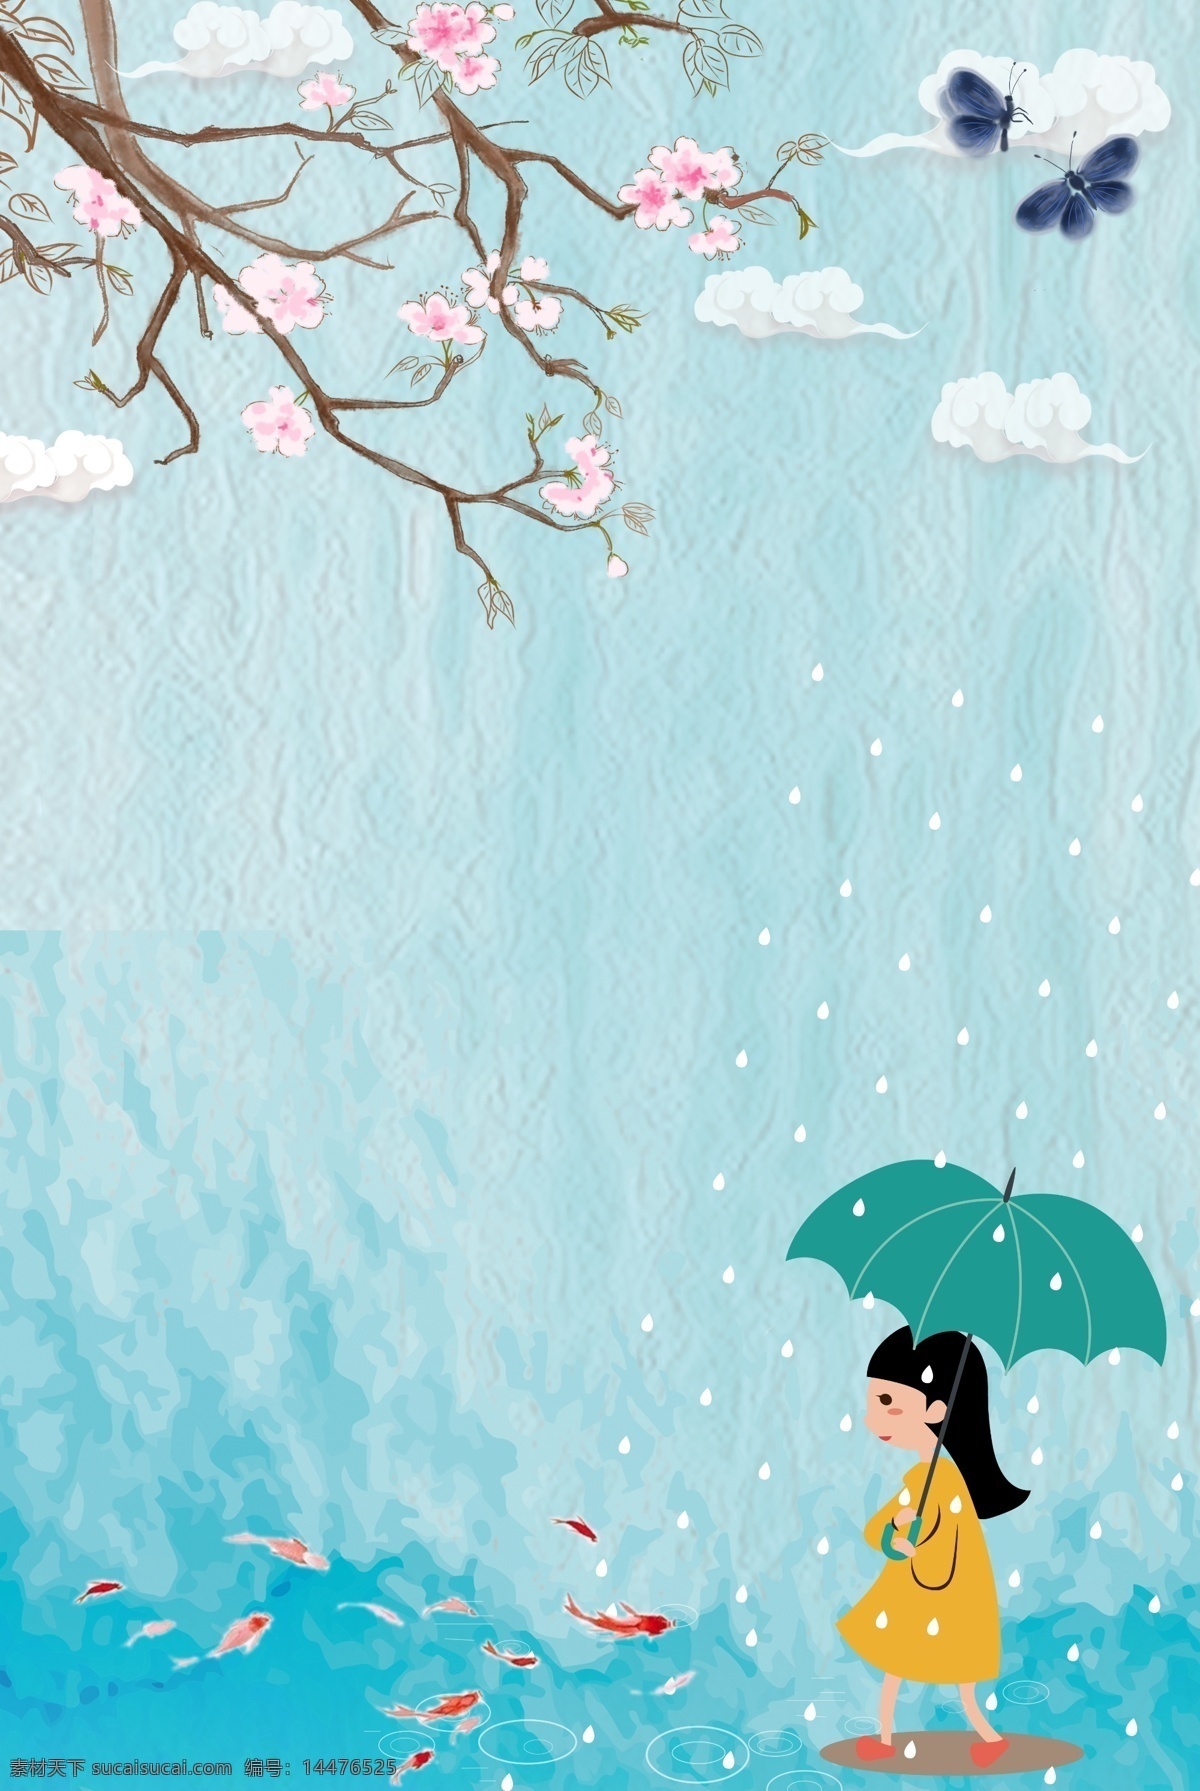 雨水 下雨 传统节日 二十四节气 水塘 雨伞 桃花 插画风 小清新 简约 燕子 持伞女孩